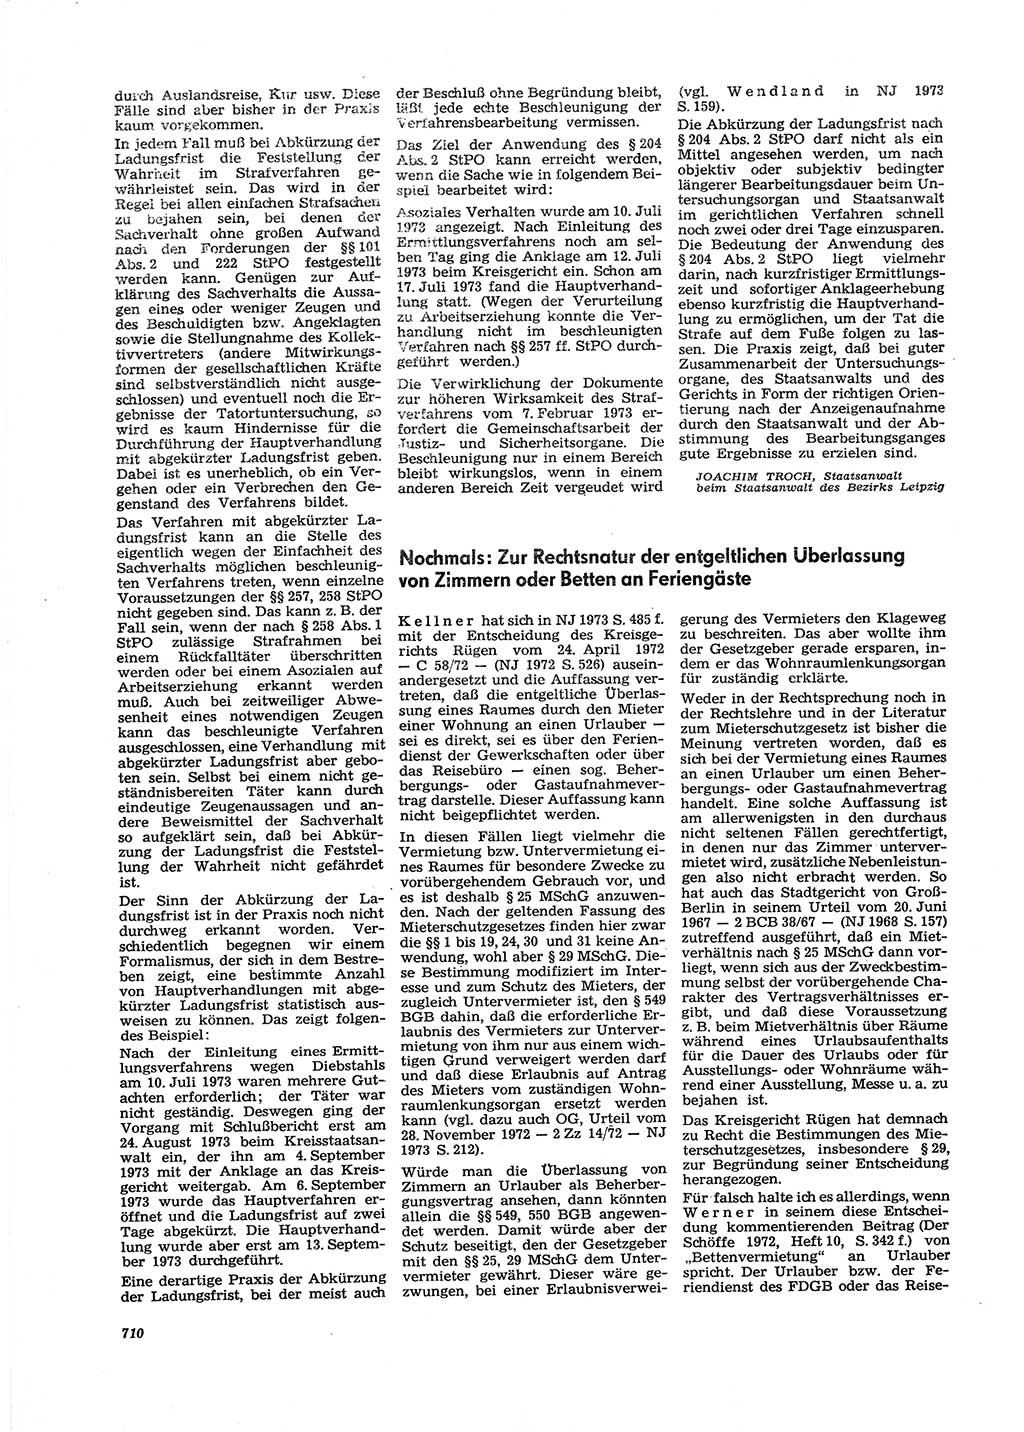 Neue Justiz (NJ), Zeitschrift für Recht und Rechtswissenschaft [Deutsche Demokratische Republik (DDR)], 27. Jahrgang 1973, Seite 710 (NJ DDR 1973, S. 710)